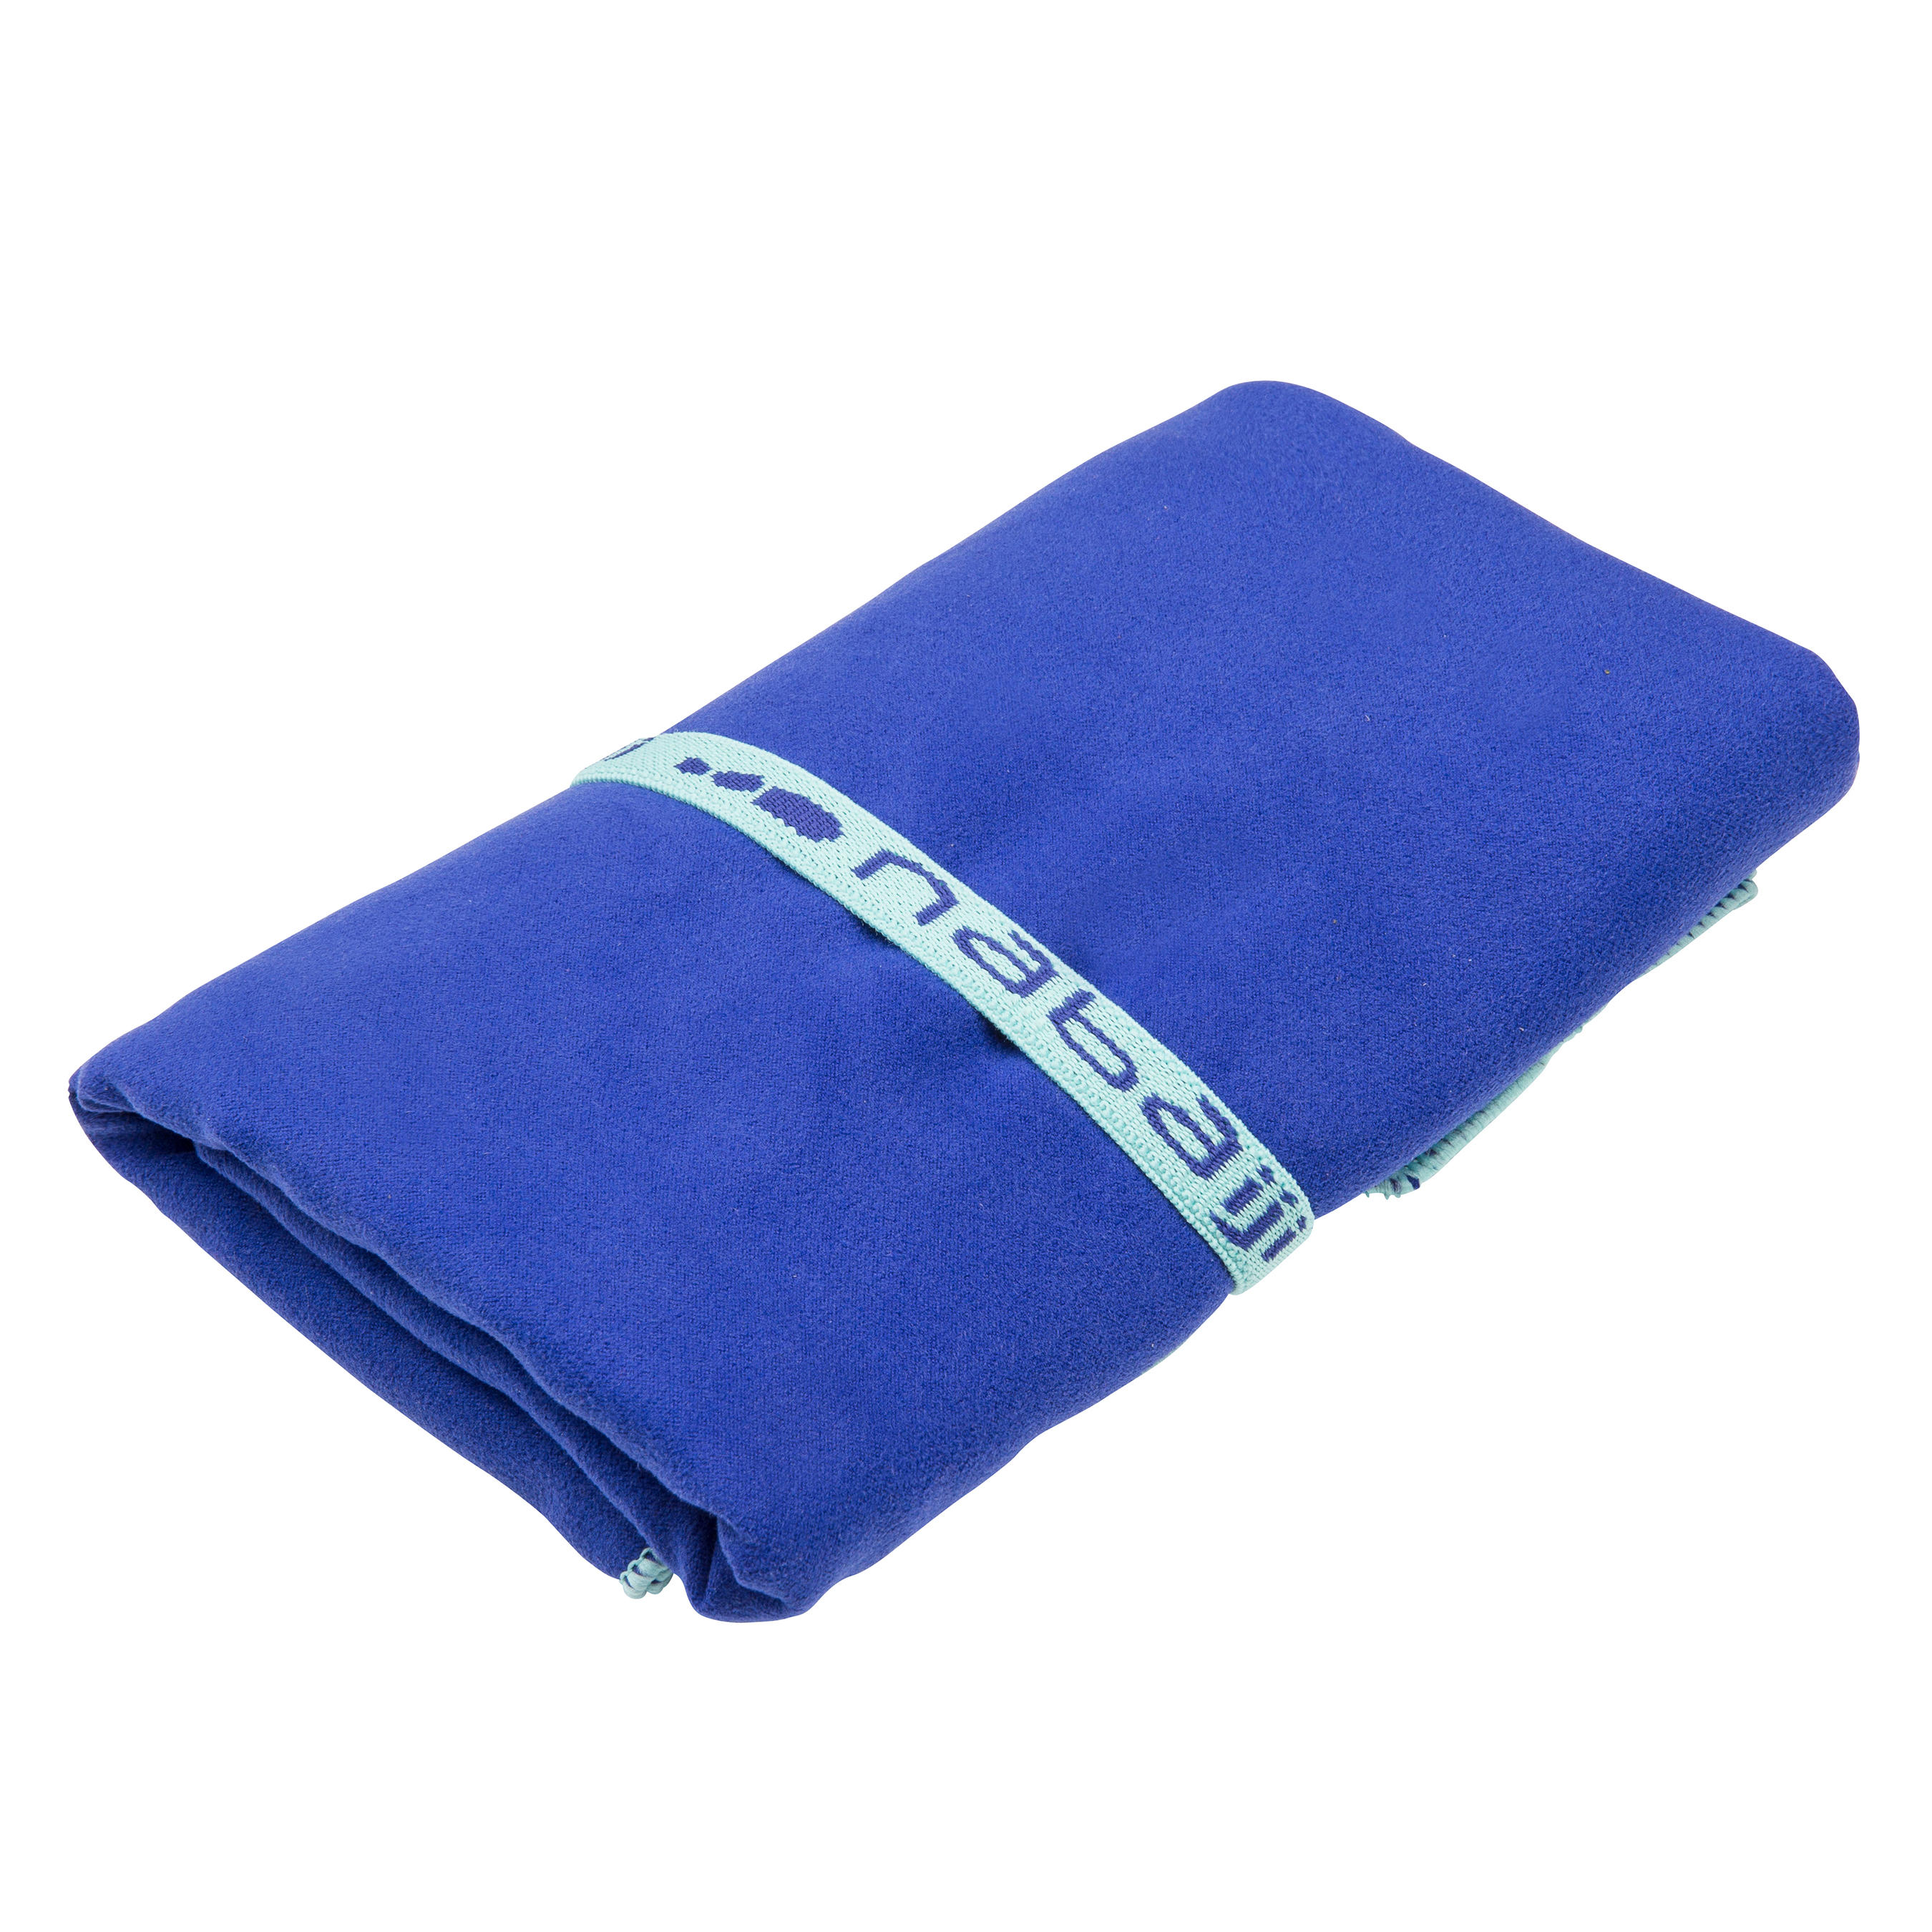 decathlon gym towel